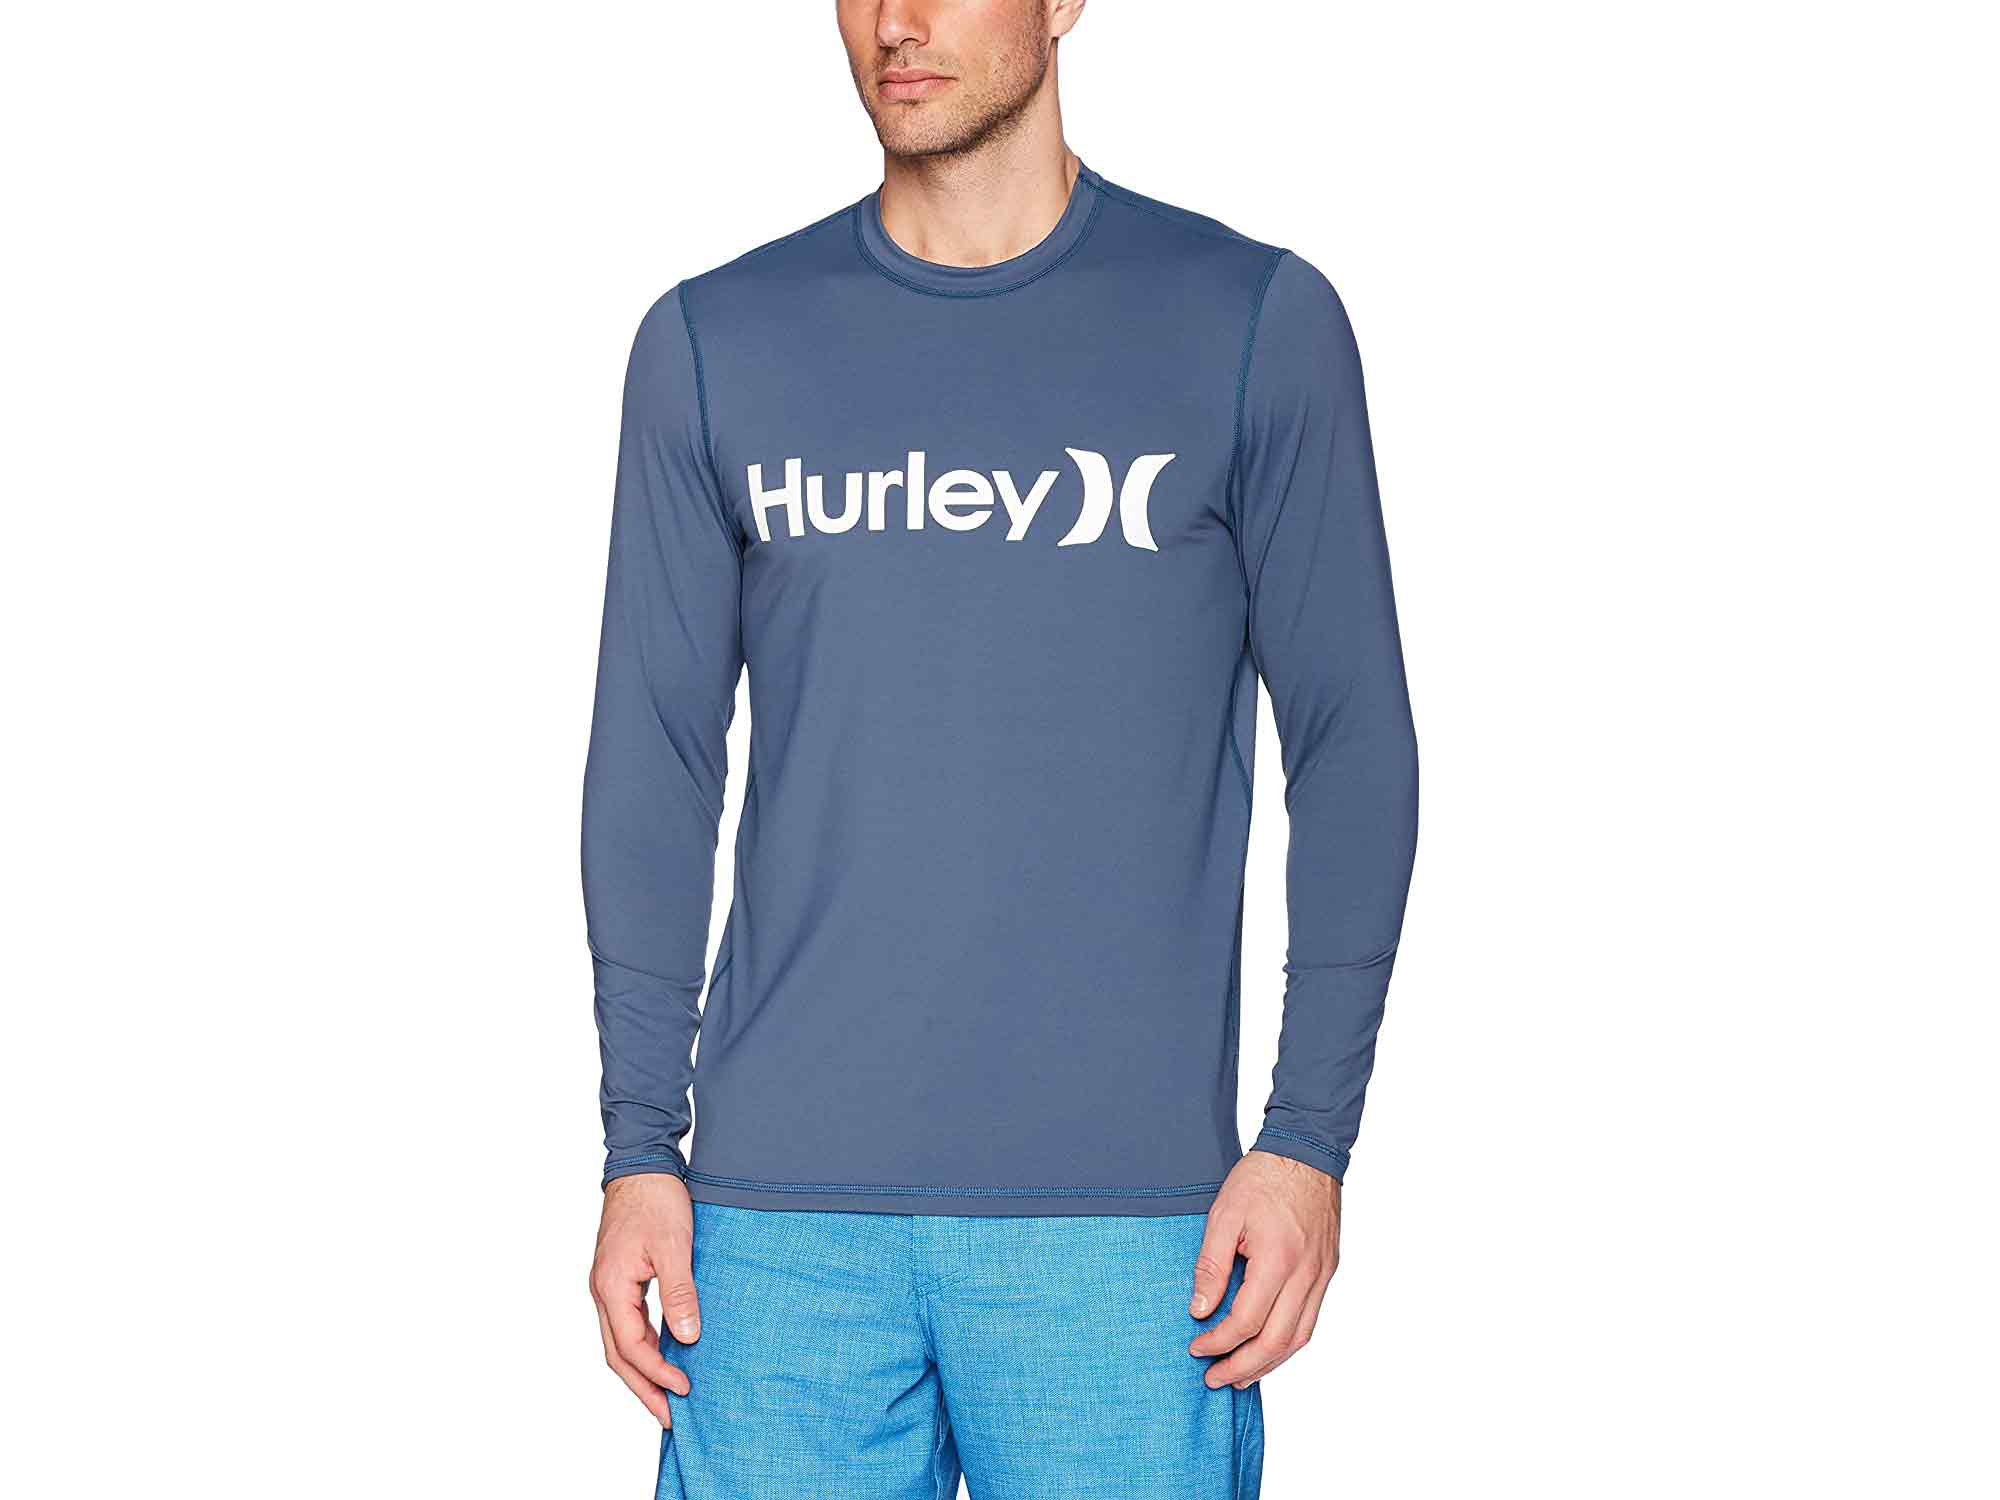 hurley shirt